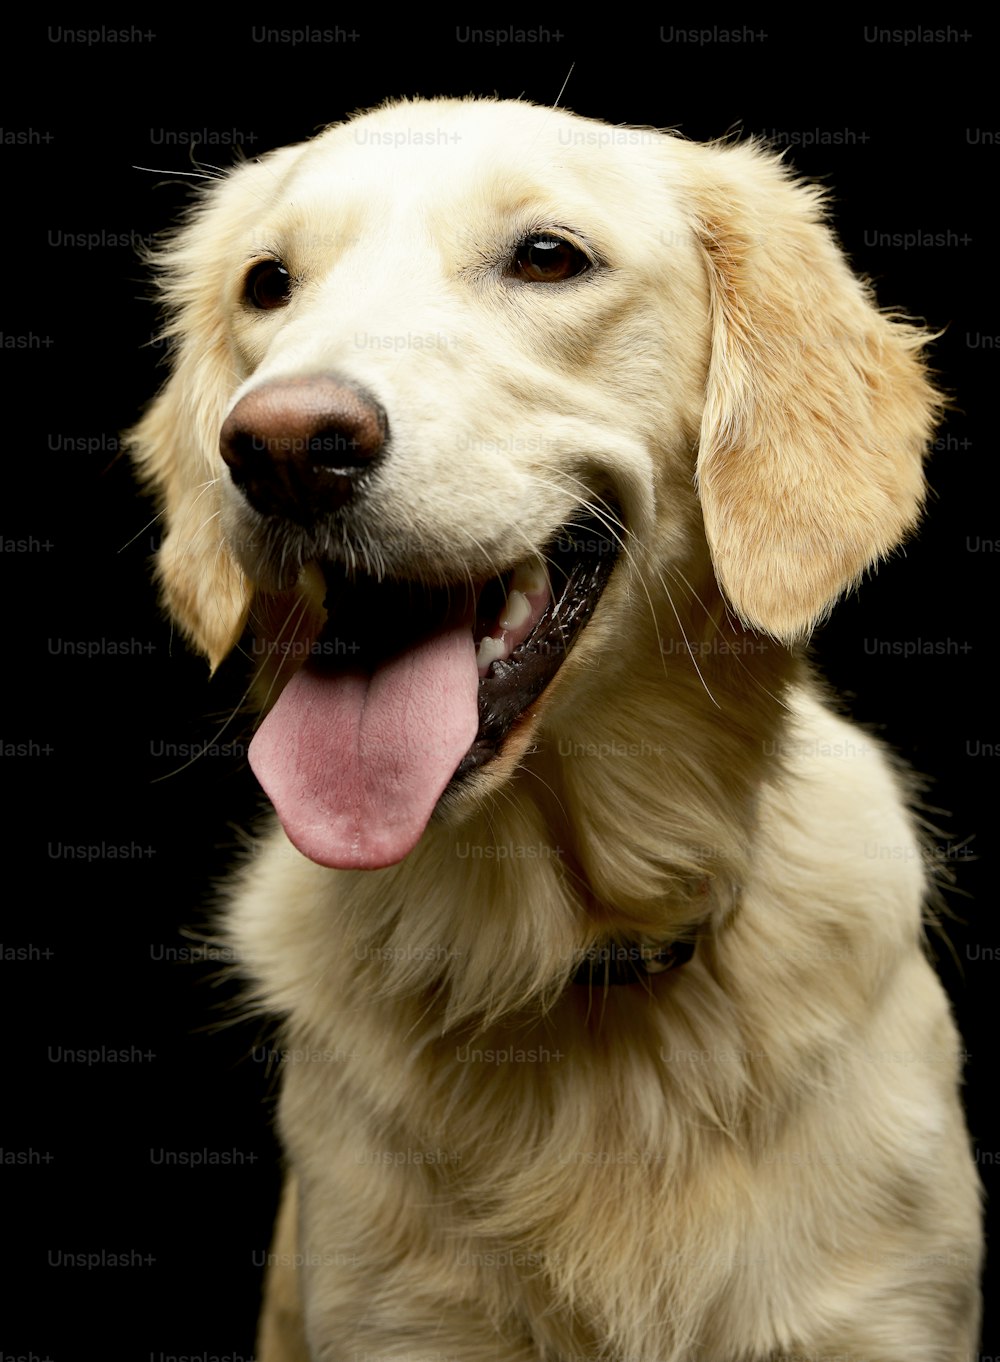 Retrato de um adorável filhote de cachorro Golden retriever - foto de estúdio, isolado no preto.